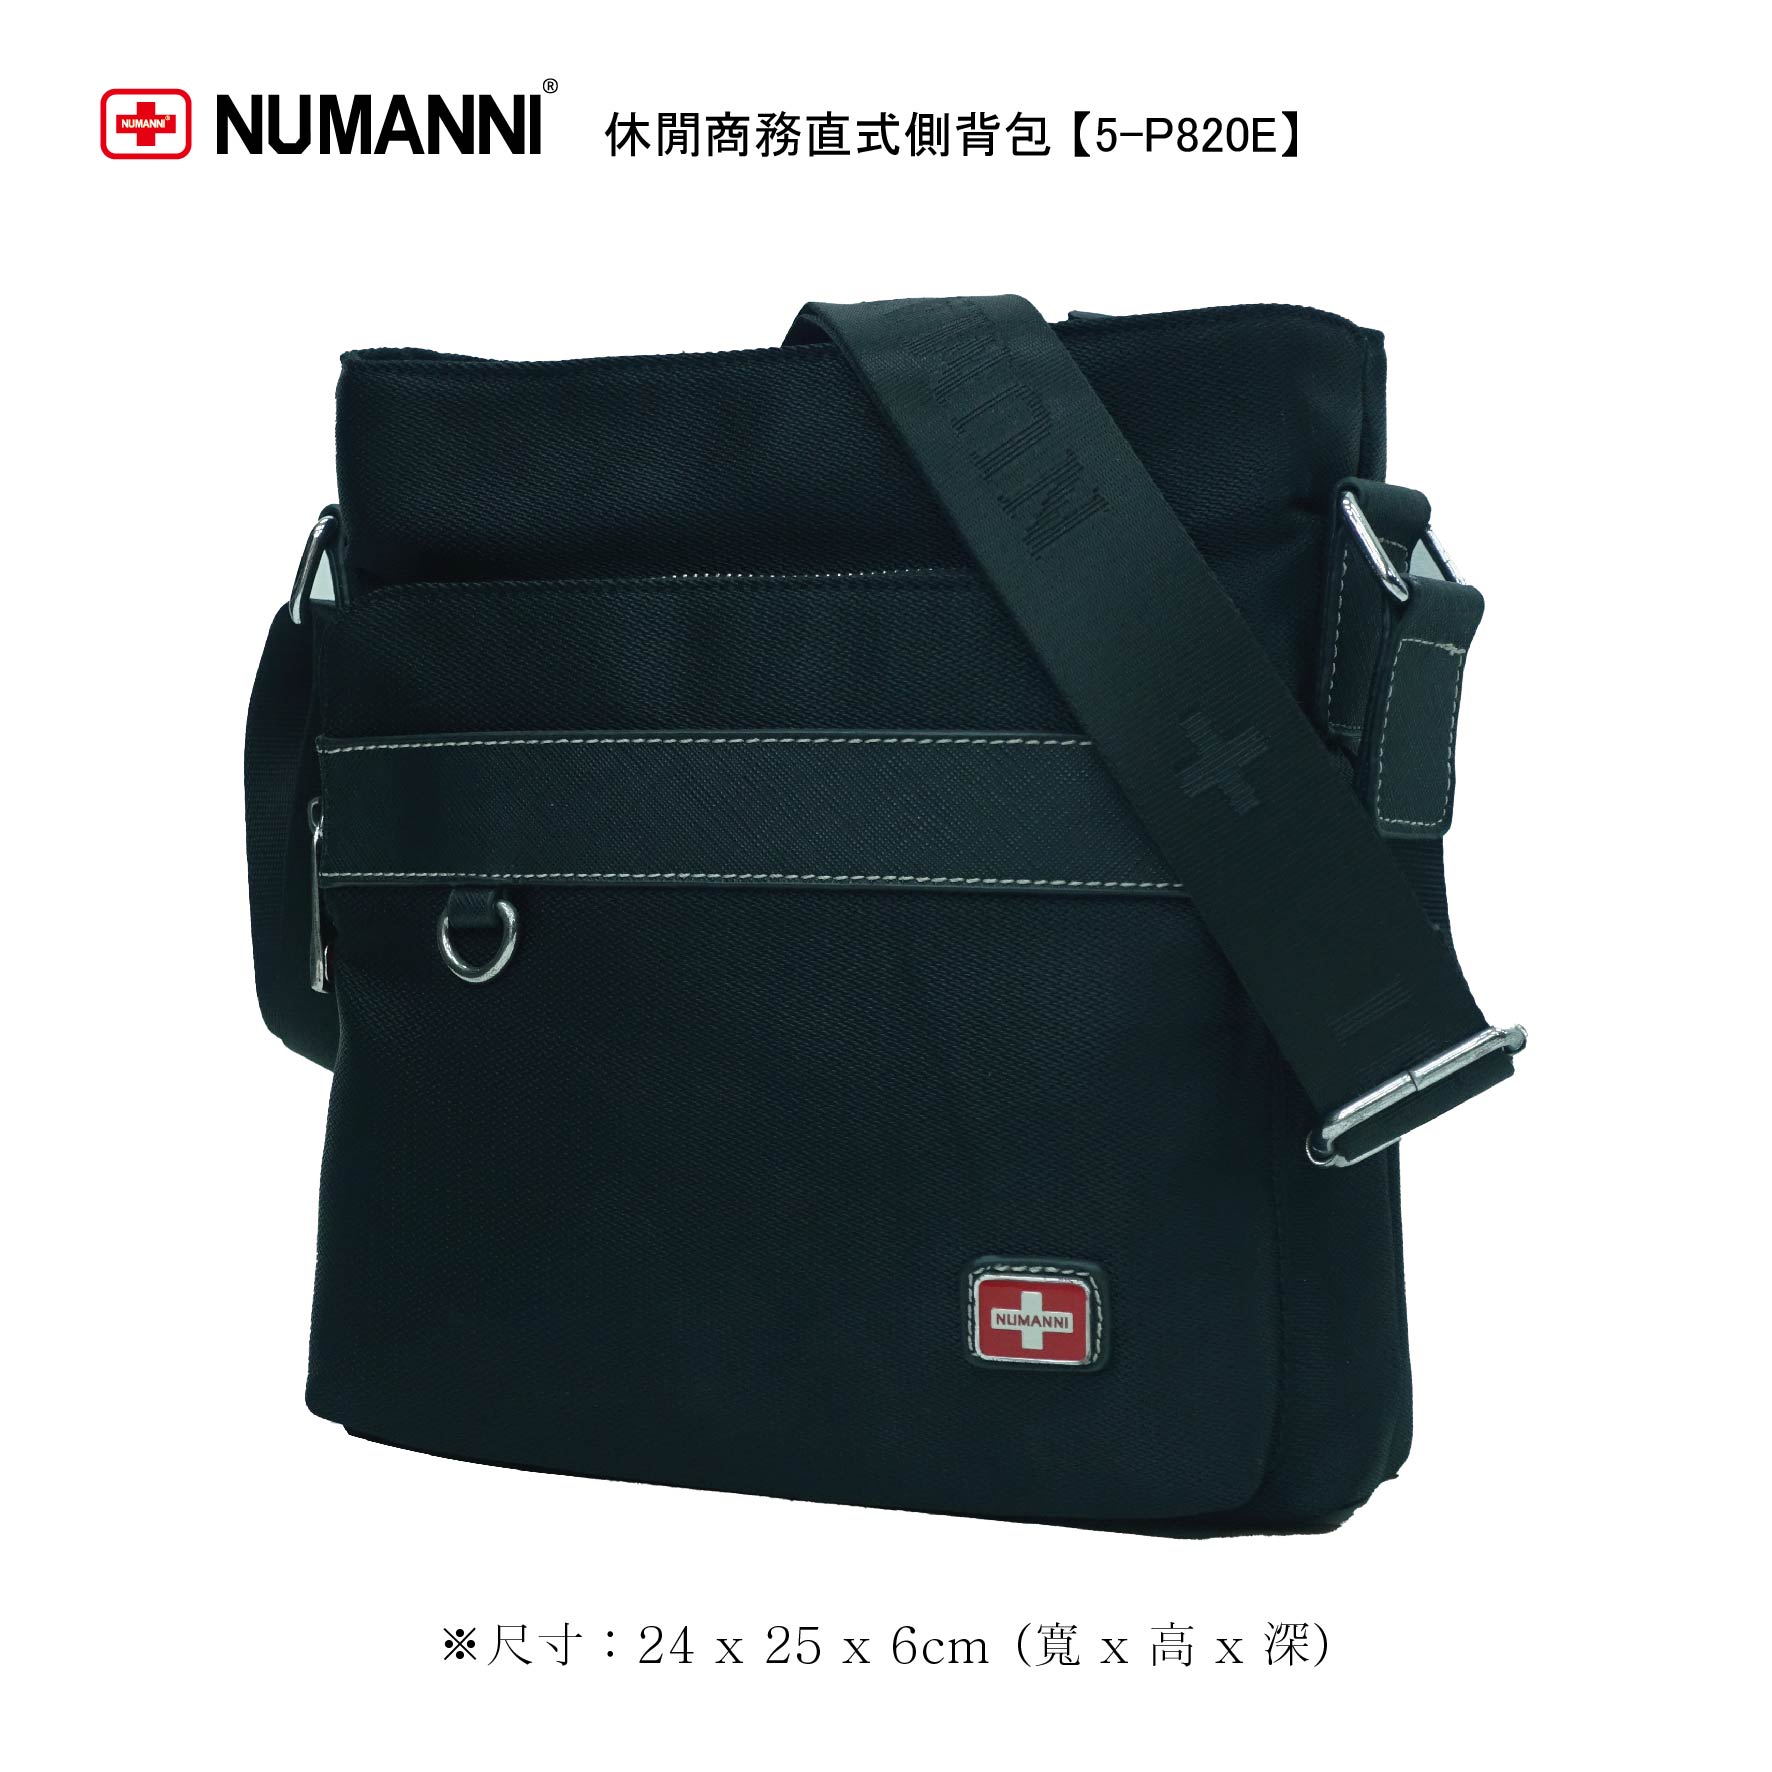 5-P820E【 NUMANNI 奴曼尼 】休閒商務直式側背包